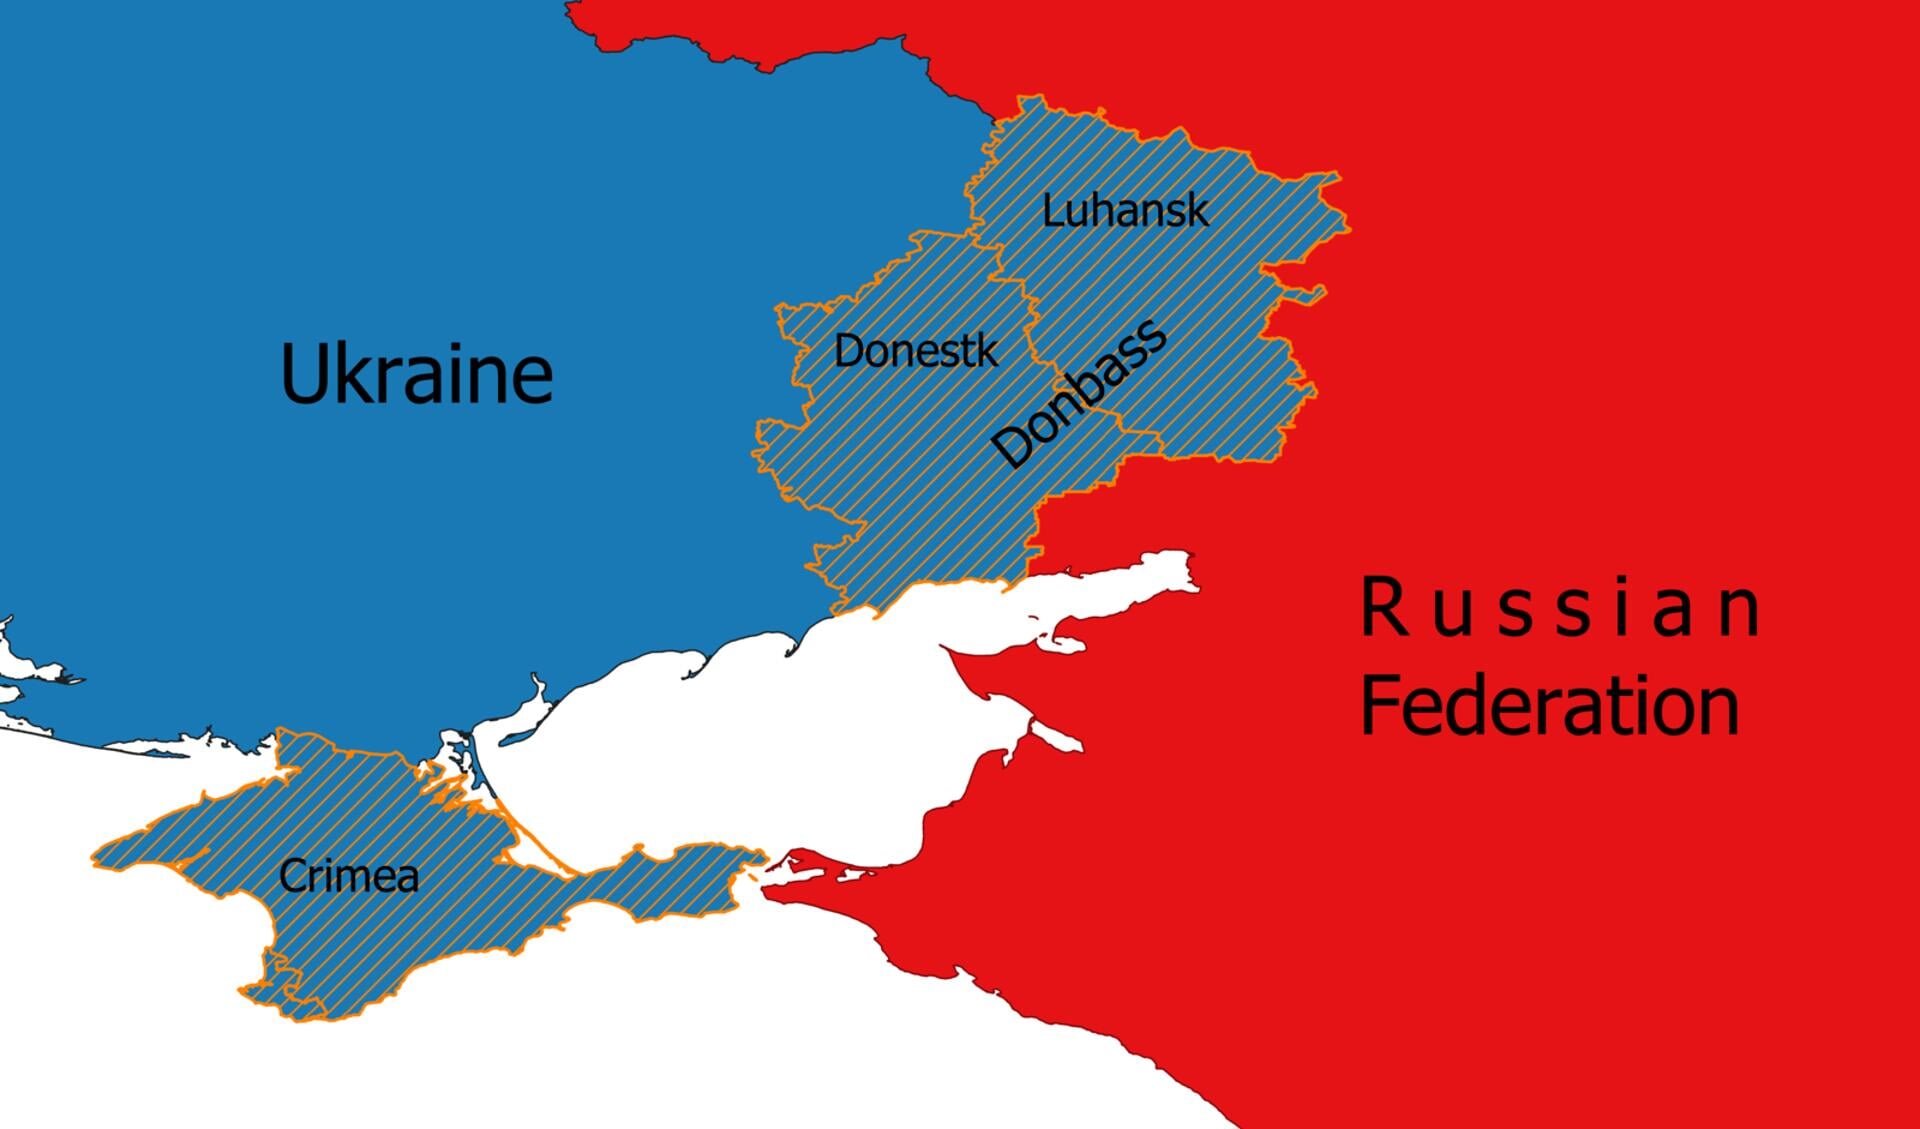 Ruslands præsident Putin anerkendte den 21. februar 2022 Donetsk og Luhansk som selvstændige stater. Det blev påskuddet til at iværksætte en såkaldt »speciel militæroperation« den 24. februar 2022, som angiveligt skulle støtte og beskytte folkerepublikkerne. I realiteten var det en angrebs- og tilintetgørelseskrig mod Ukraine.